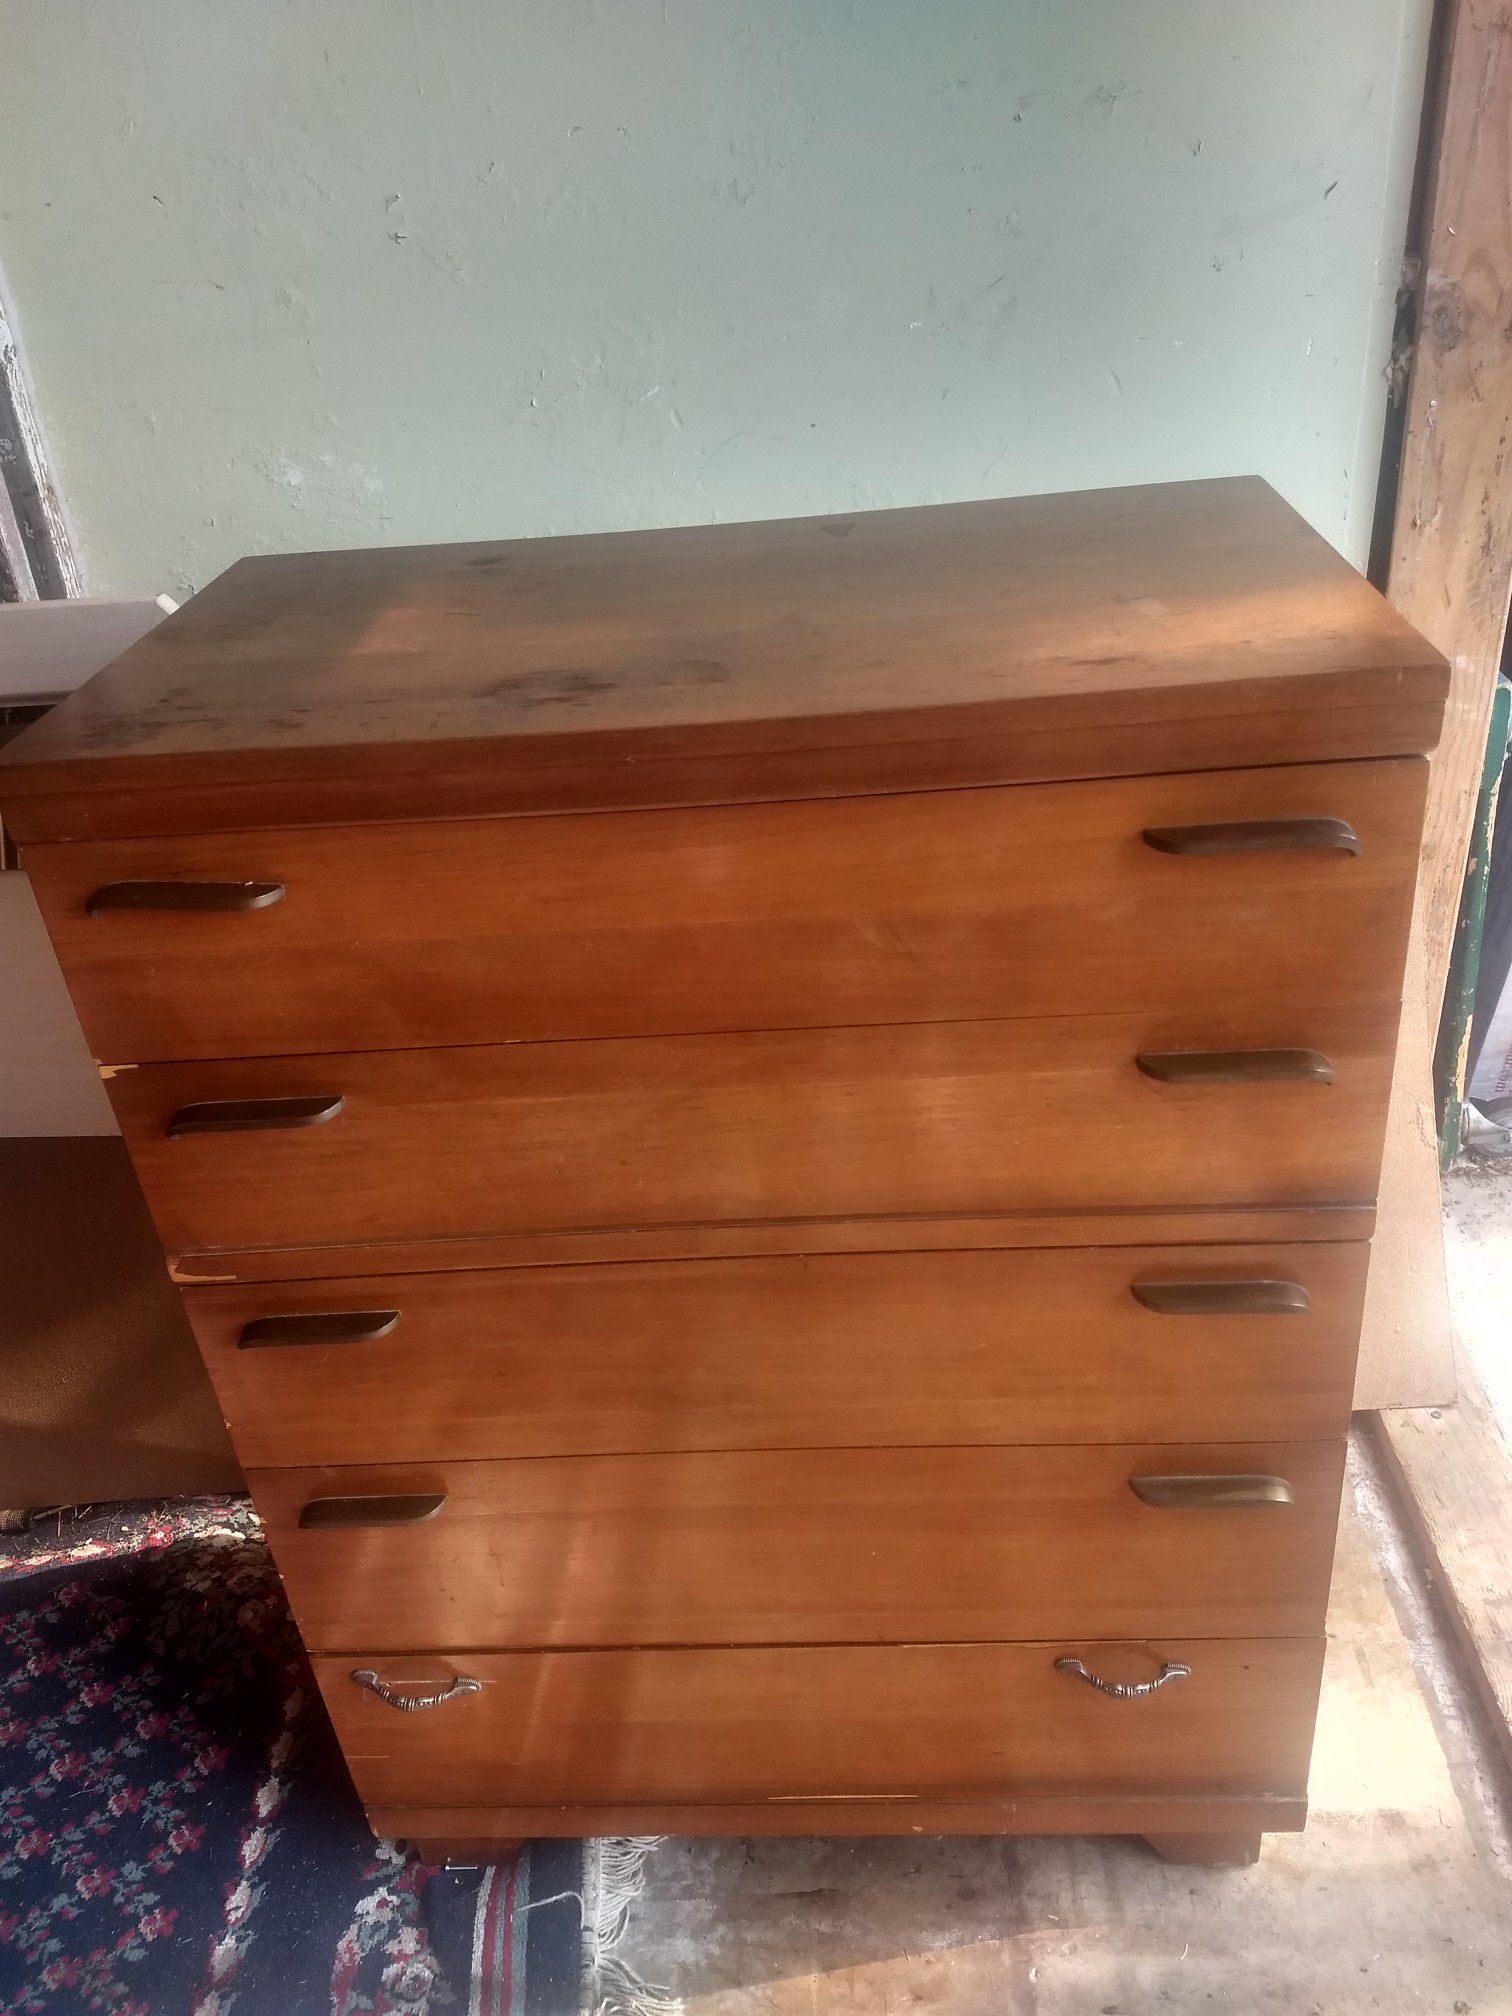 Handsome solid pecan wood five drawer dresser.